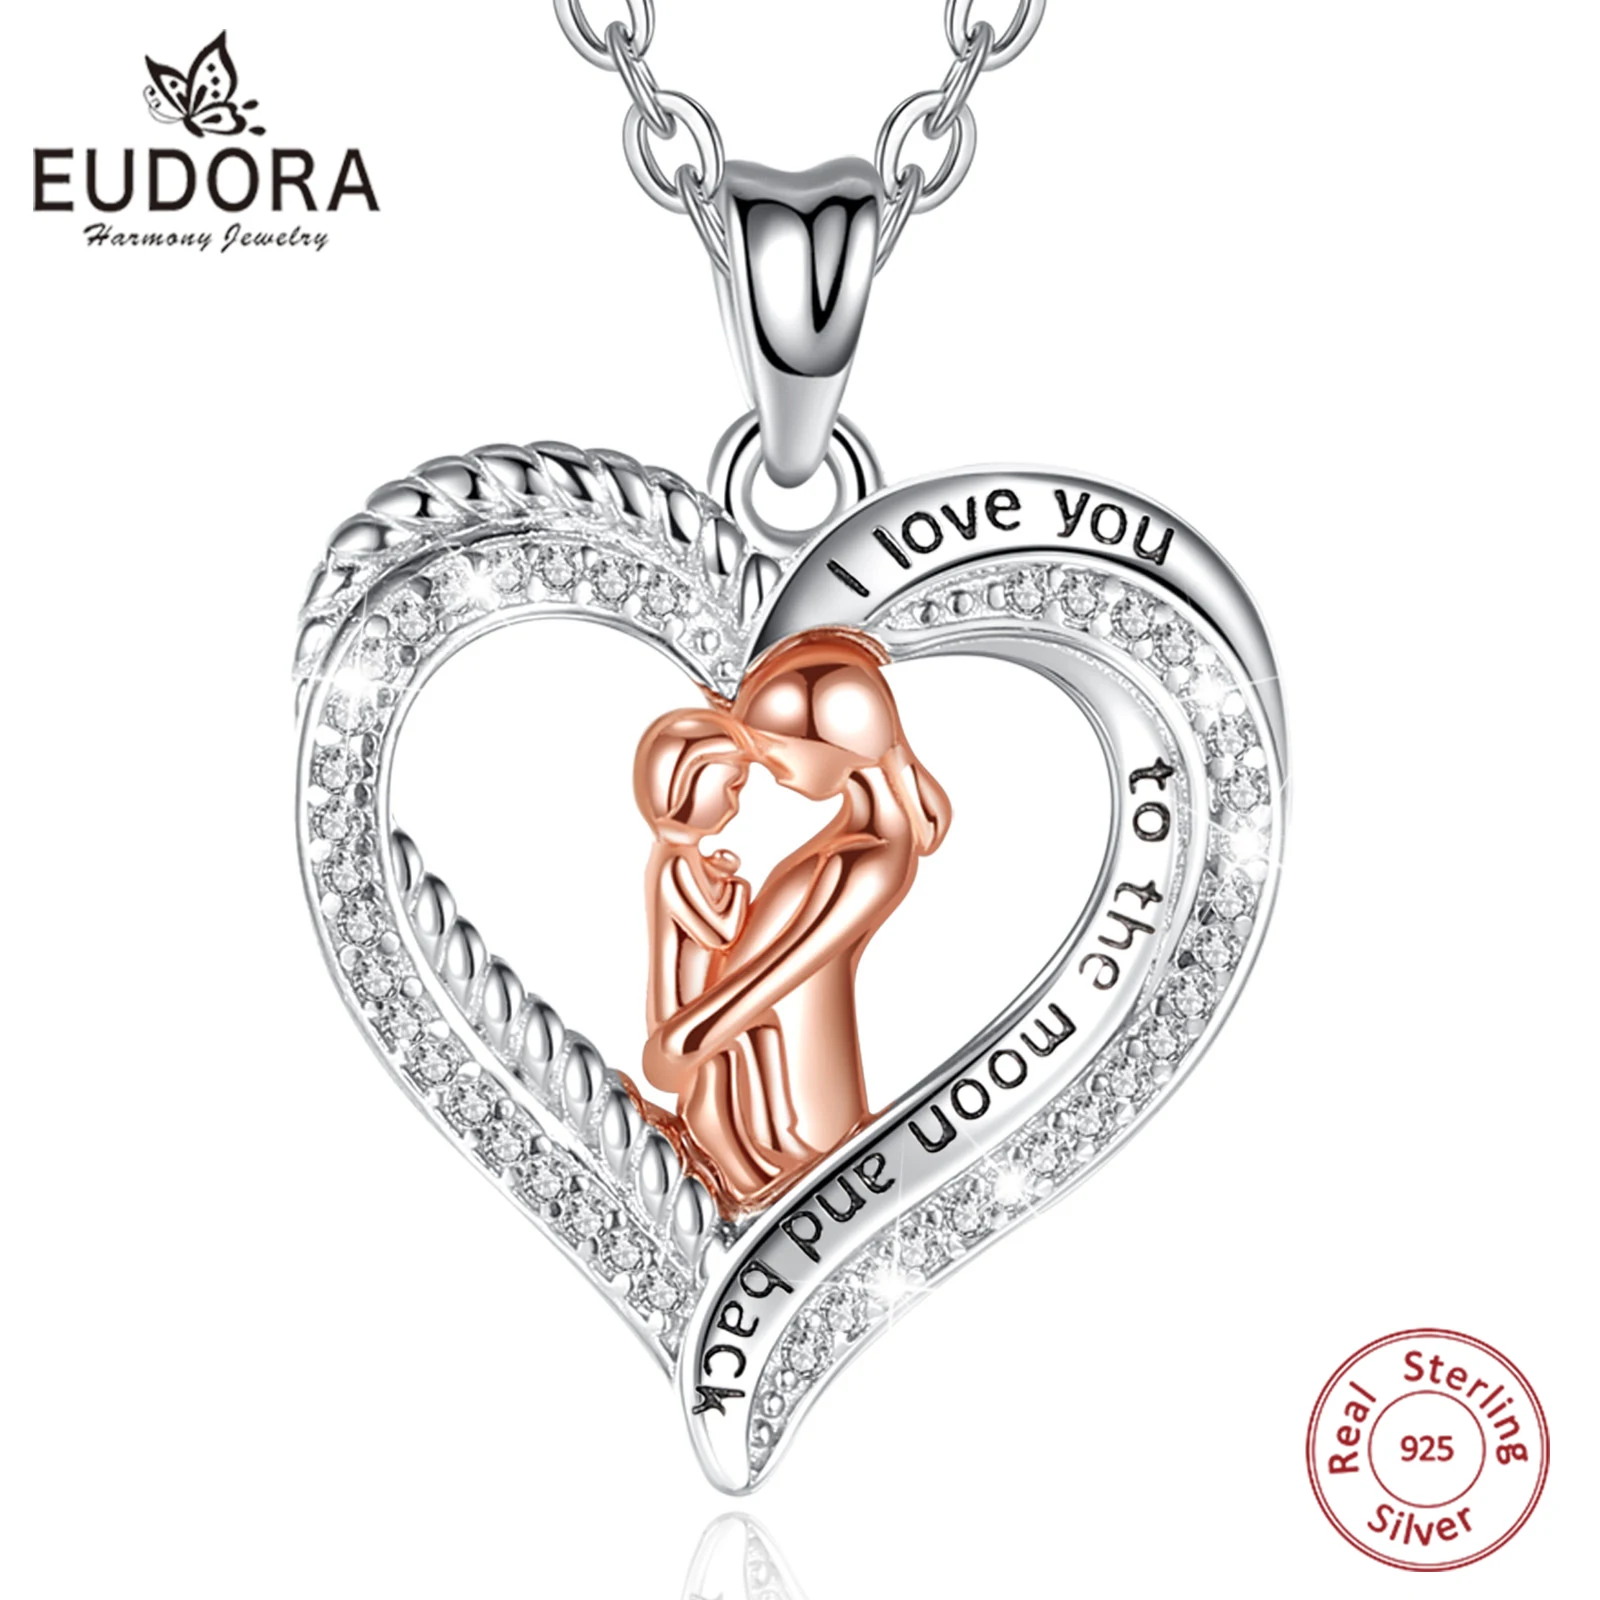 

Ожерелье EUDORA из стерлингового серебра 925 пробы для мамы и ребенка, розовое золото, кулон в виде сердца с кристаллами, хорошее ювелирное изделие для подарка на День Матери